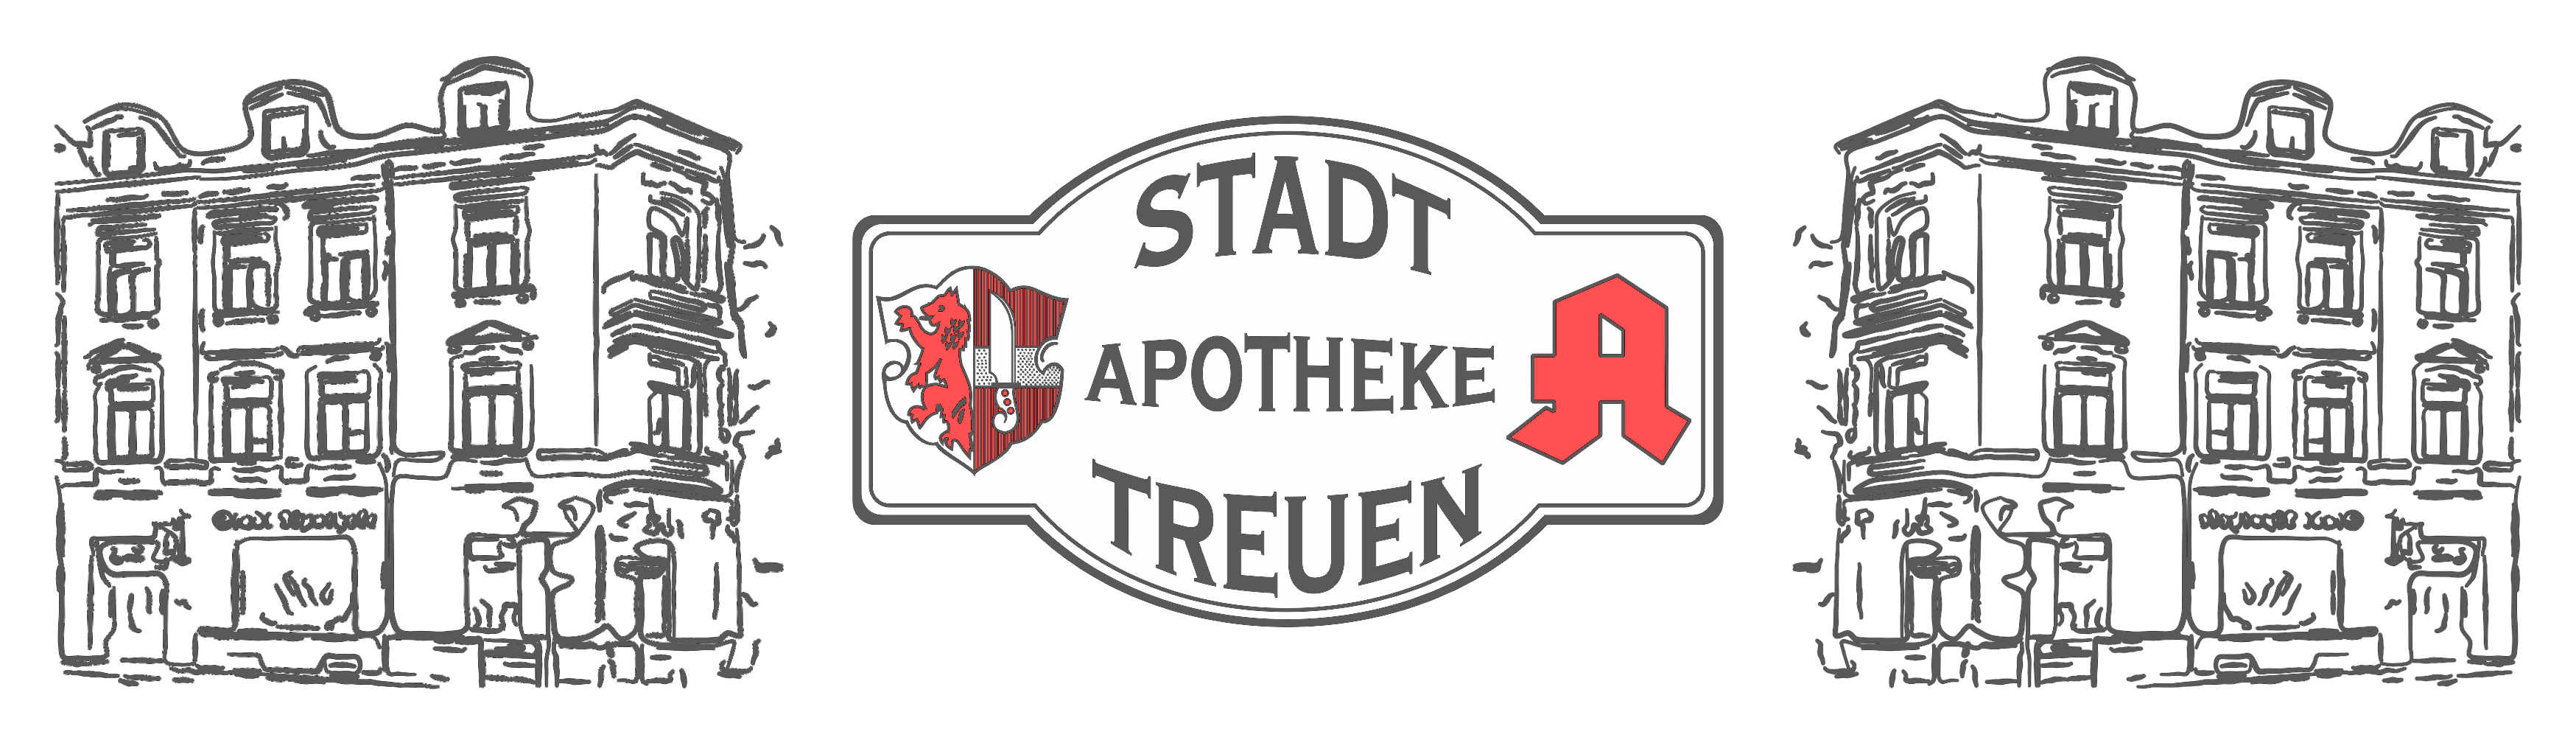 Stadt-Apotheke Treuen